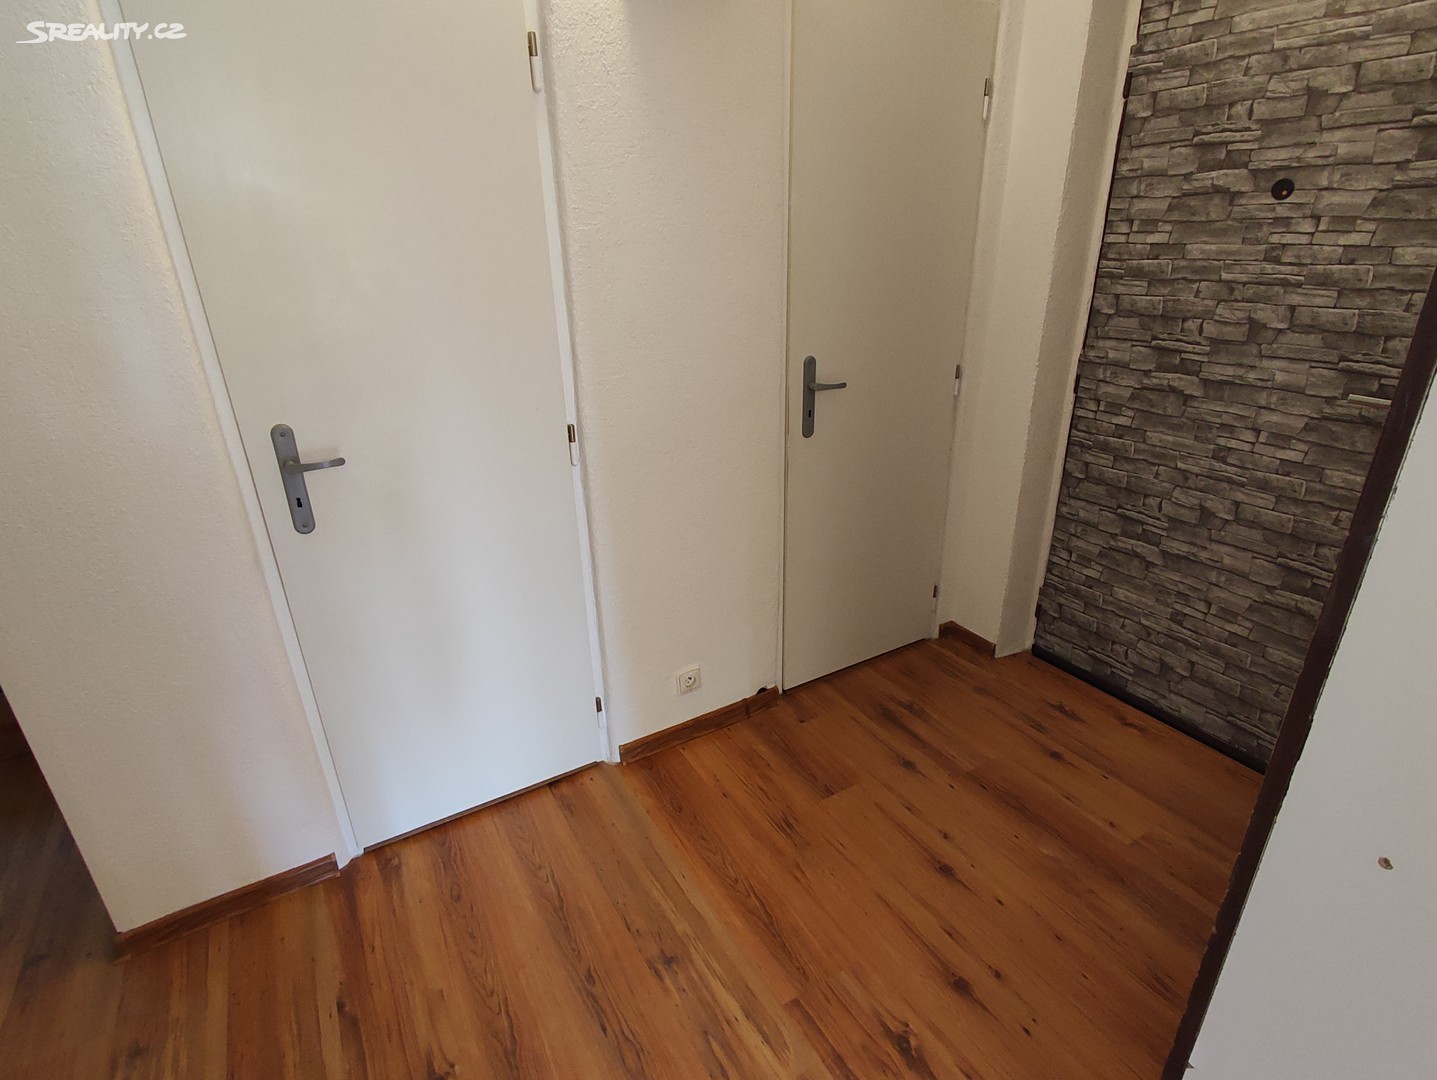 Pronájem bytu 1+1 37 m², Nová Role, okres Karlovy Vary